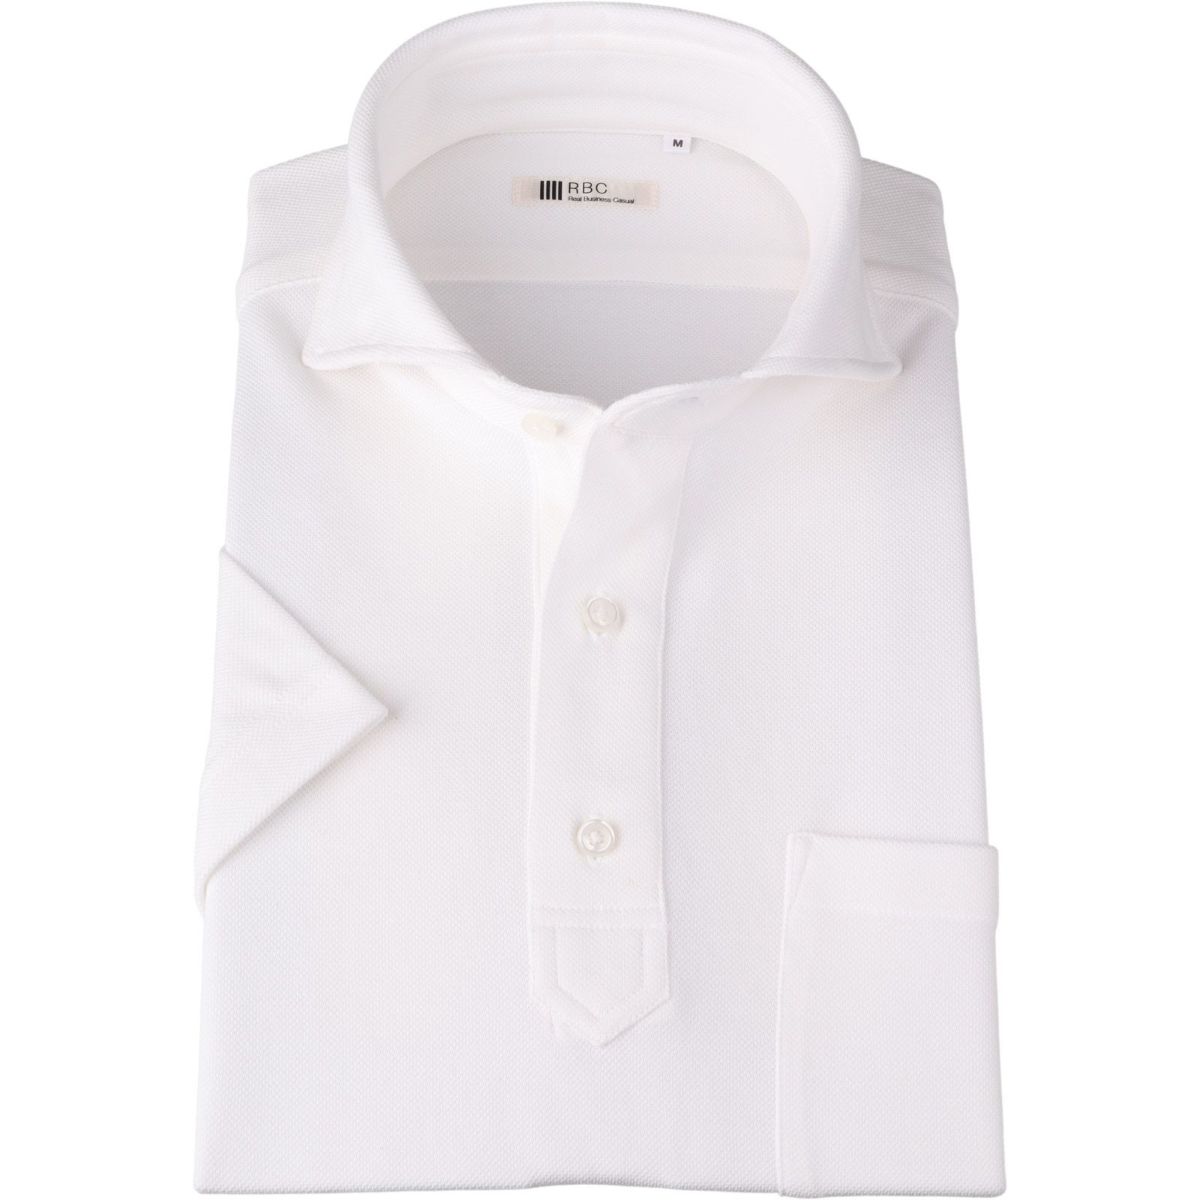 ポロシャツ スーツセレクト ホワイト - ポロシャツ